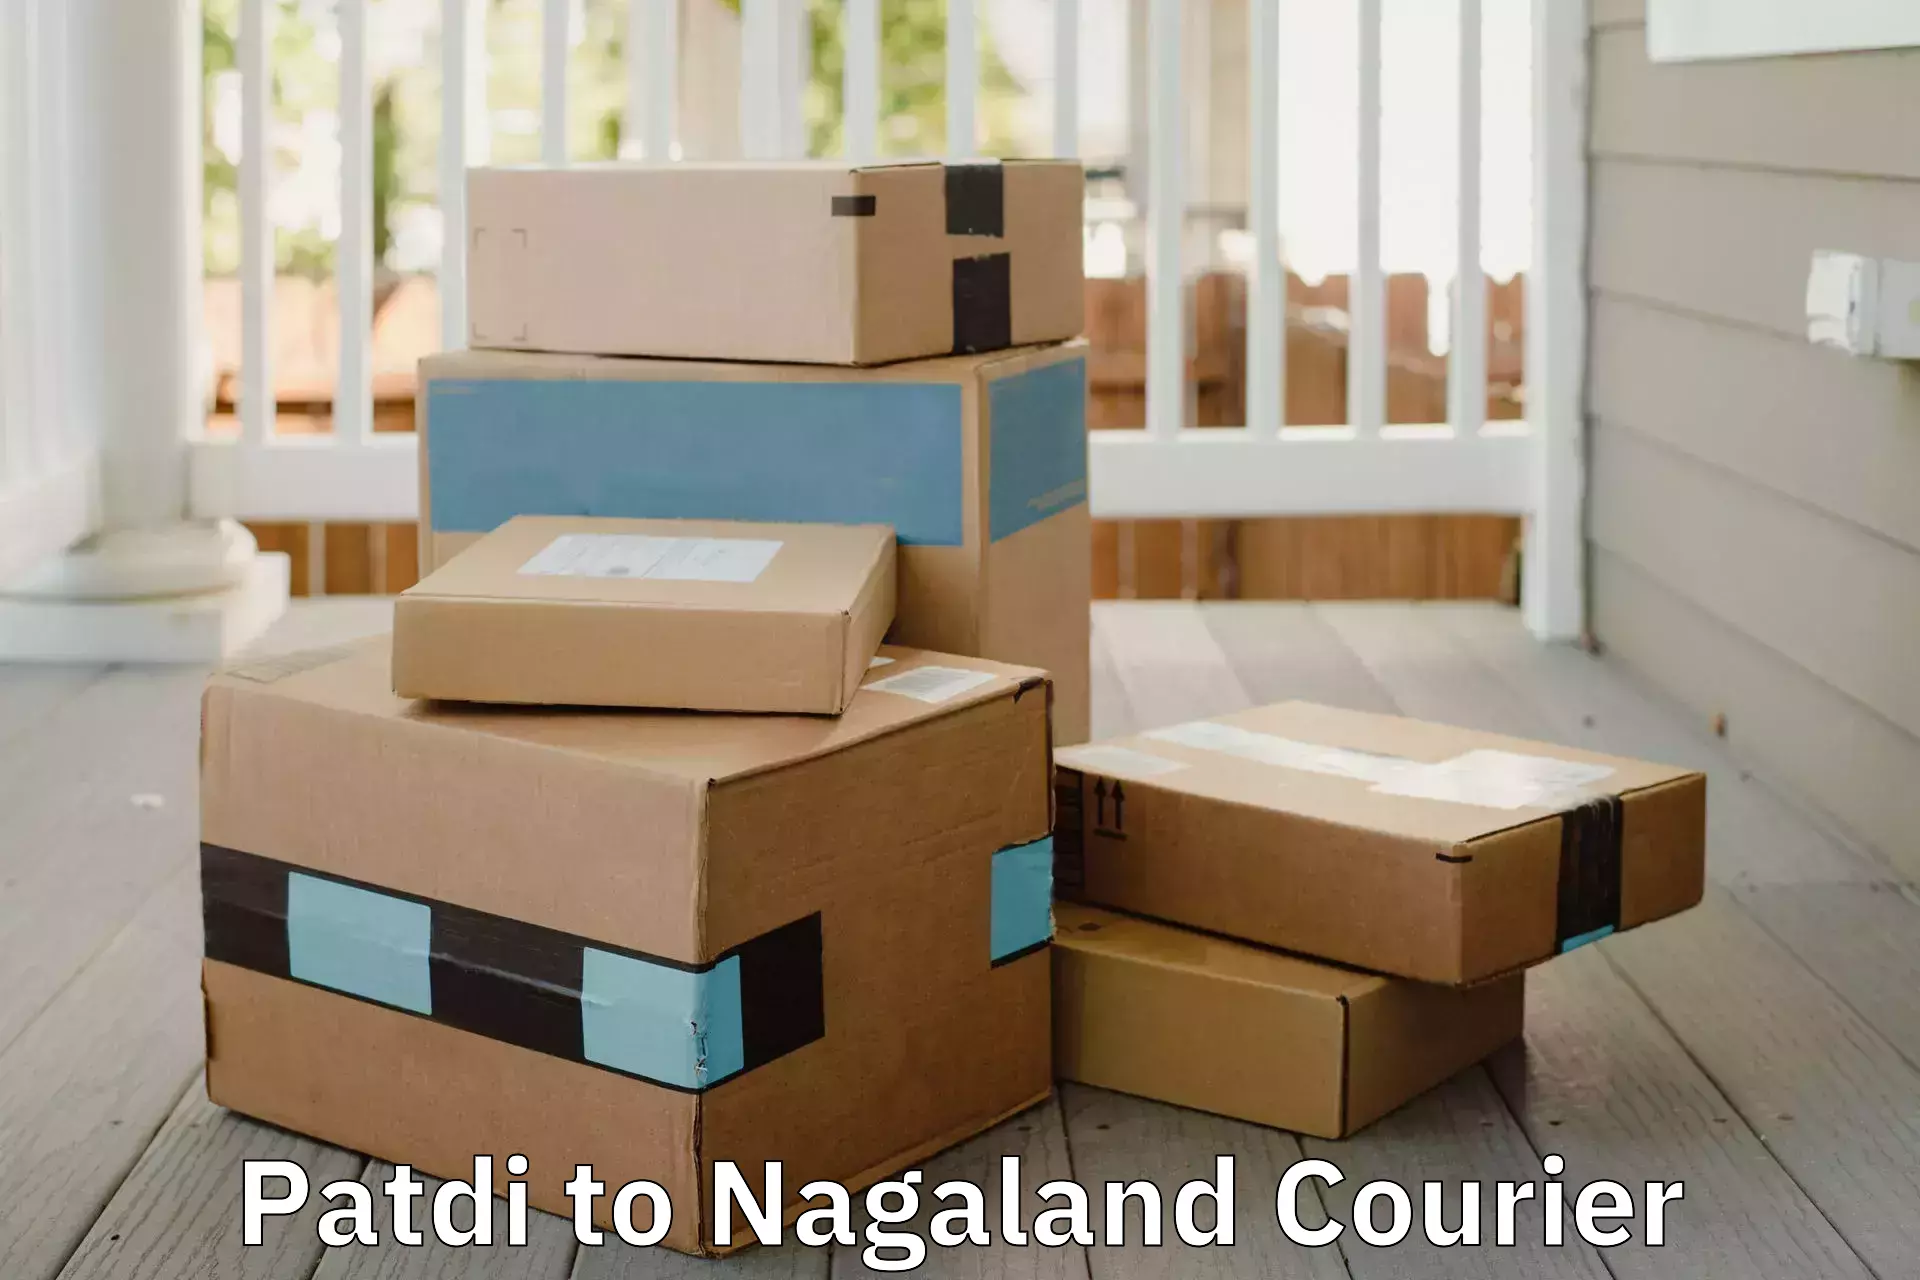 Specialized moving company Patdi to Nagaland